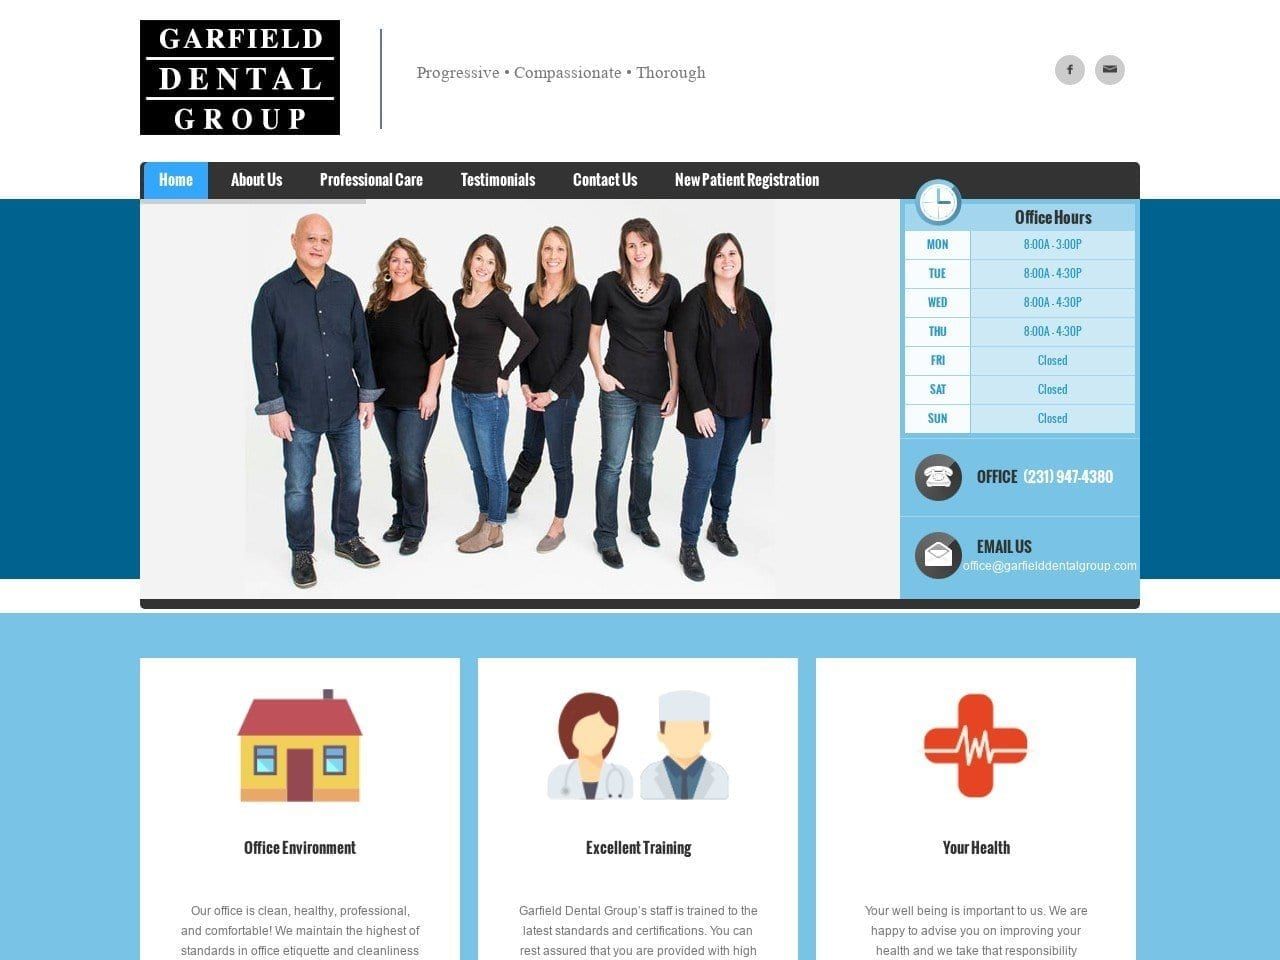 Garfield Dental Group Website Screenshot from garfielddentalgroup.com